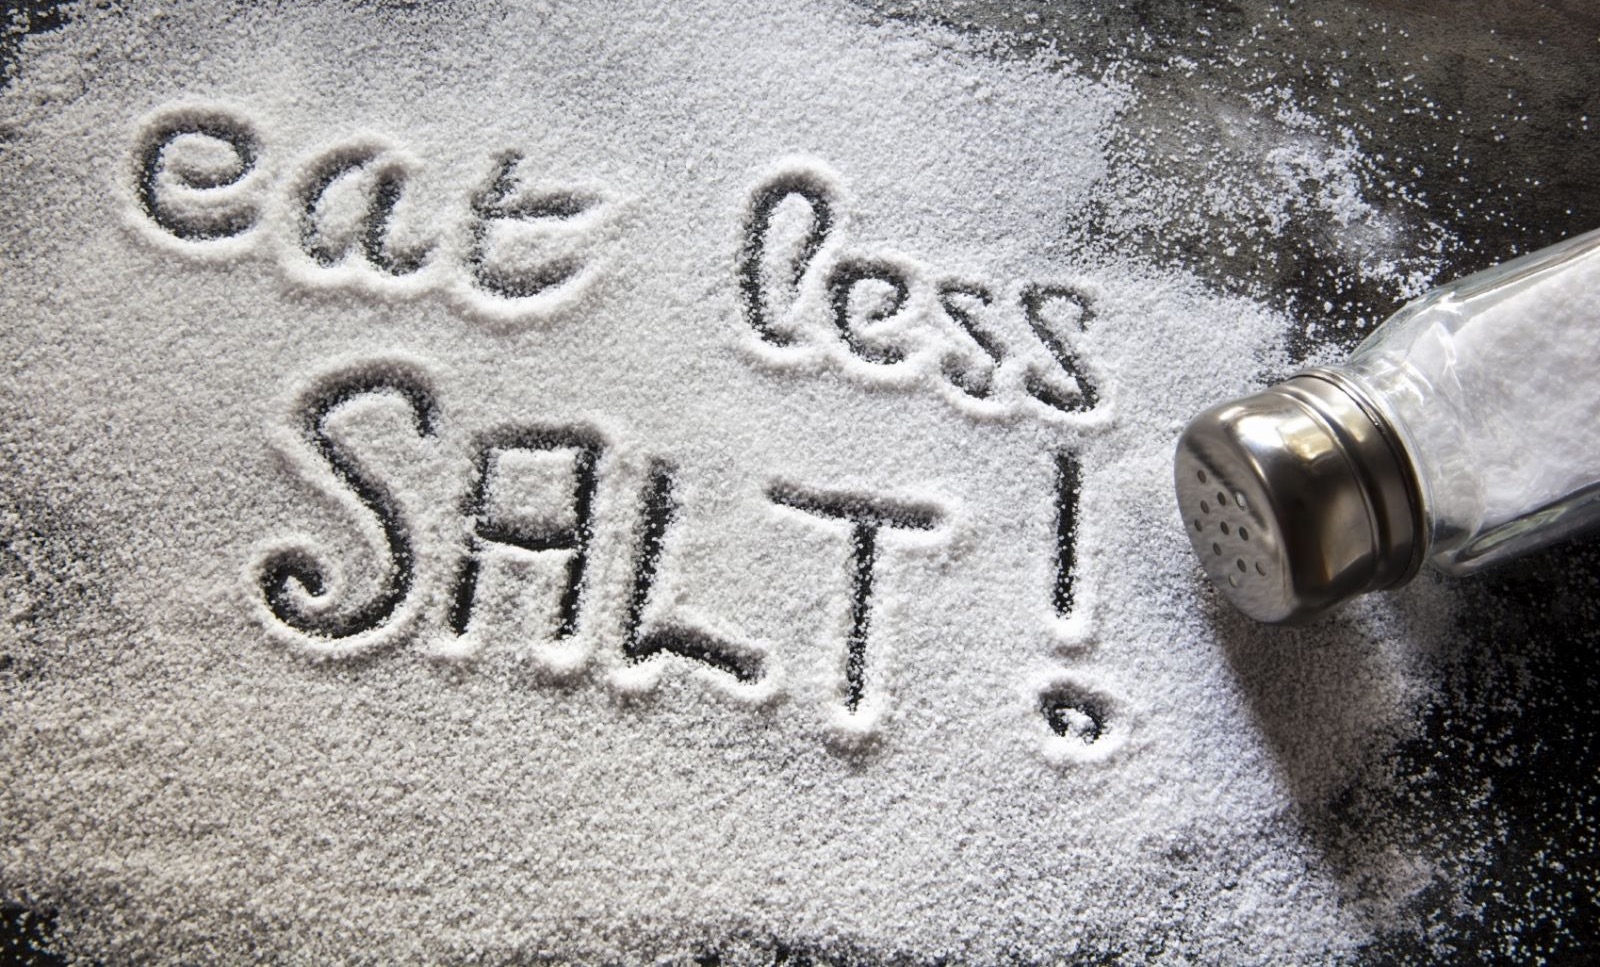 Manger trop salé augmente le risque d’hypertension artérielle, info ou intox?